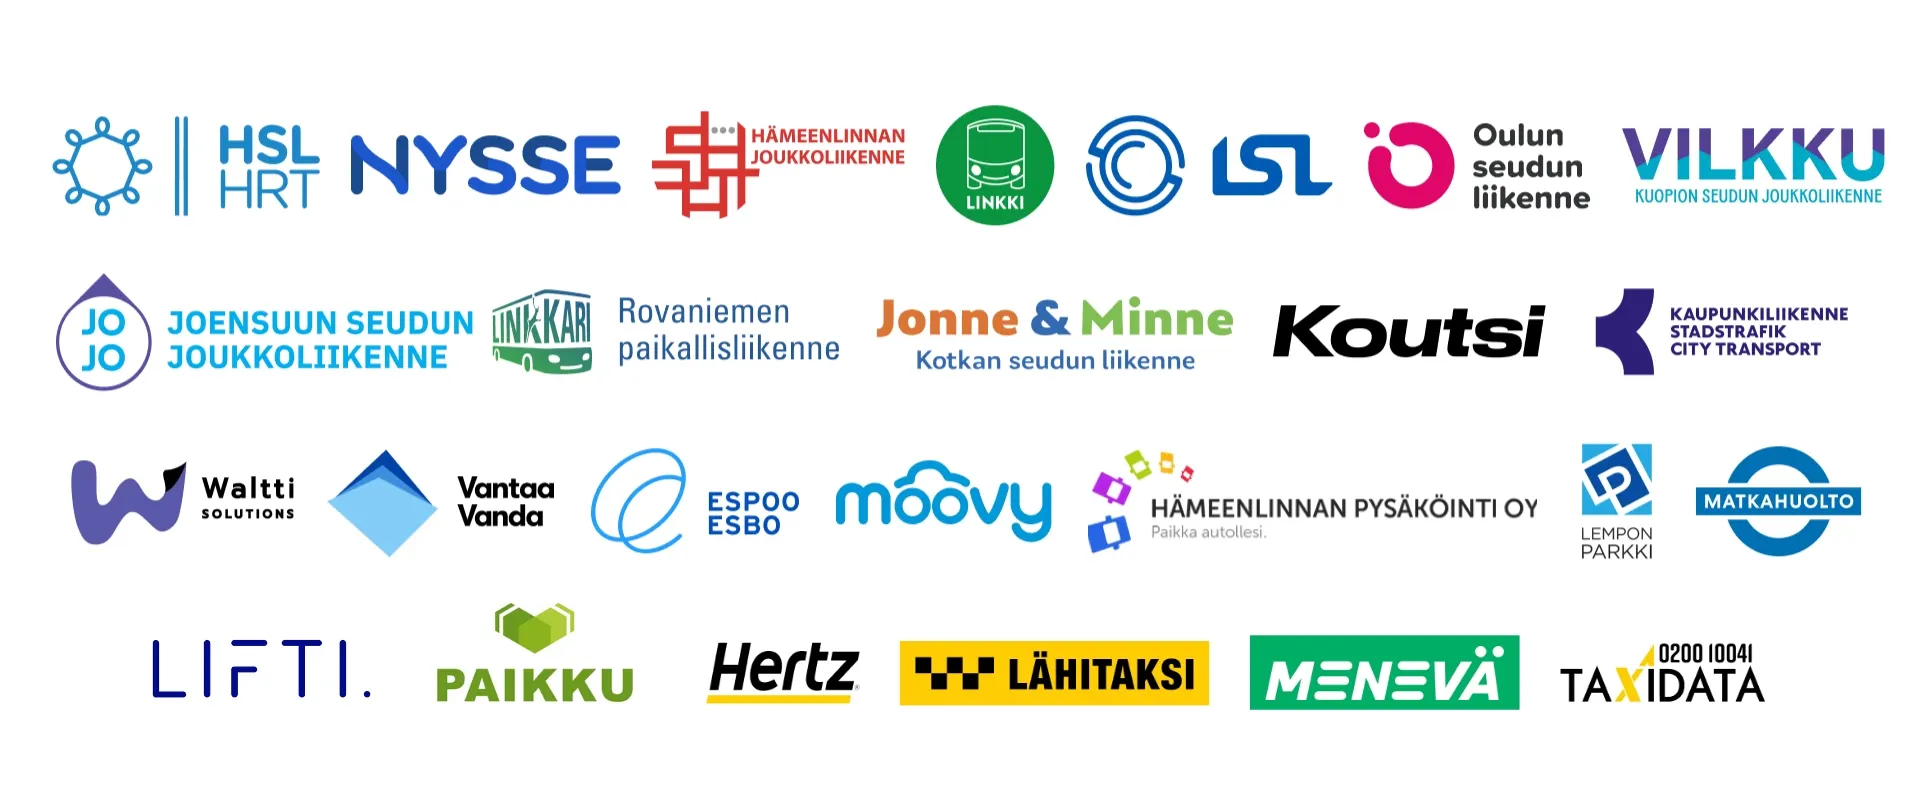 Logoja: HSL, Nysse, Hämeenlinna, Linkki, LSL, OSL, Vilkku, JOJO, Linkkari, Jonne&Minne, Koutsi, Kaupunkiliikenne, Waltti, Vantaa, Espoo, Moovy, Hämeenlinnan pysäköinti, Lempon Parkki, Matkahuolto, Lifti, Paikku, Hertz, Lähitaksi, Menevä, Taxidata